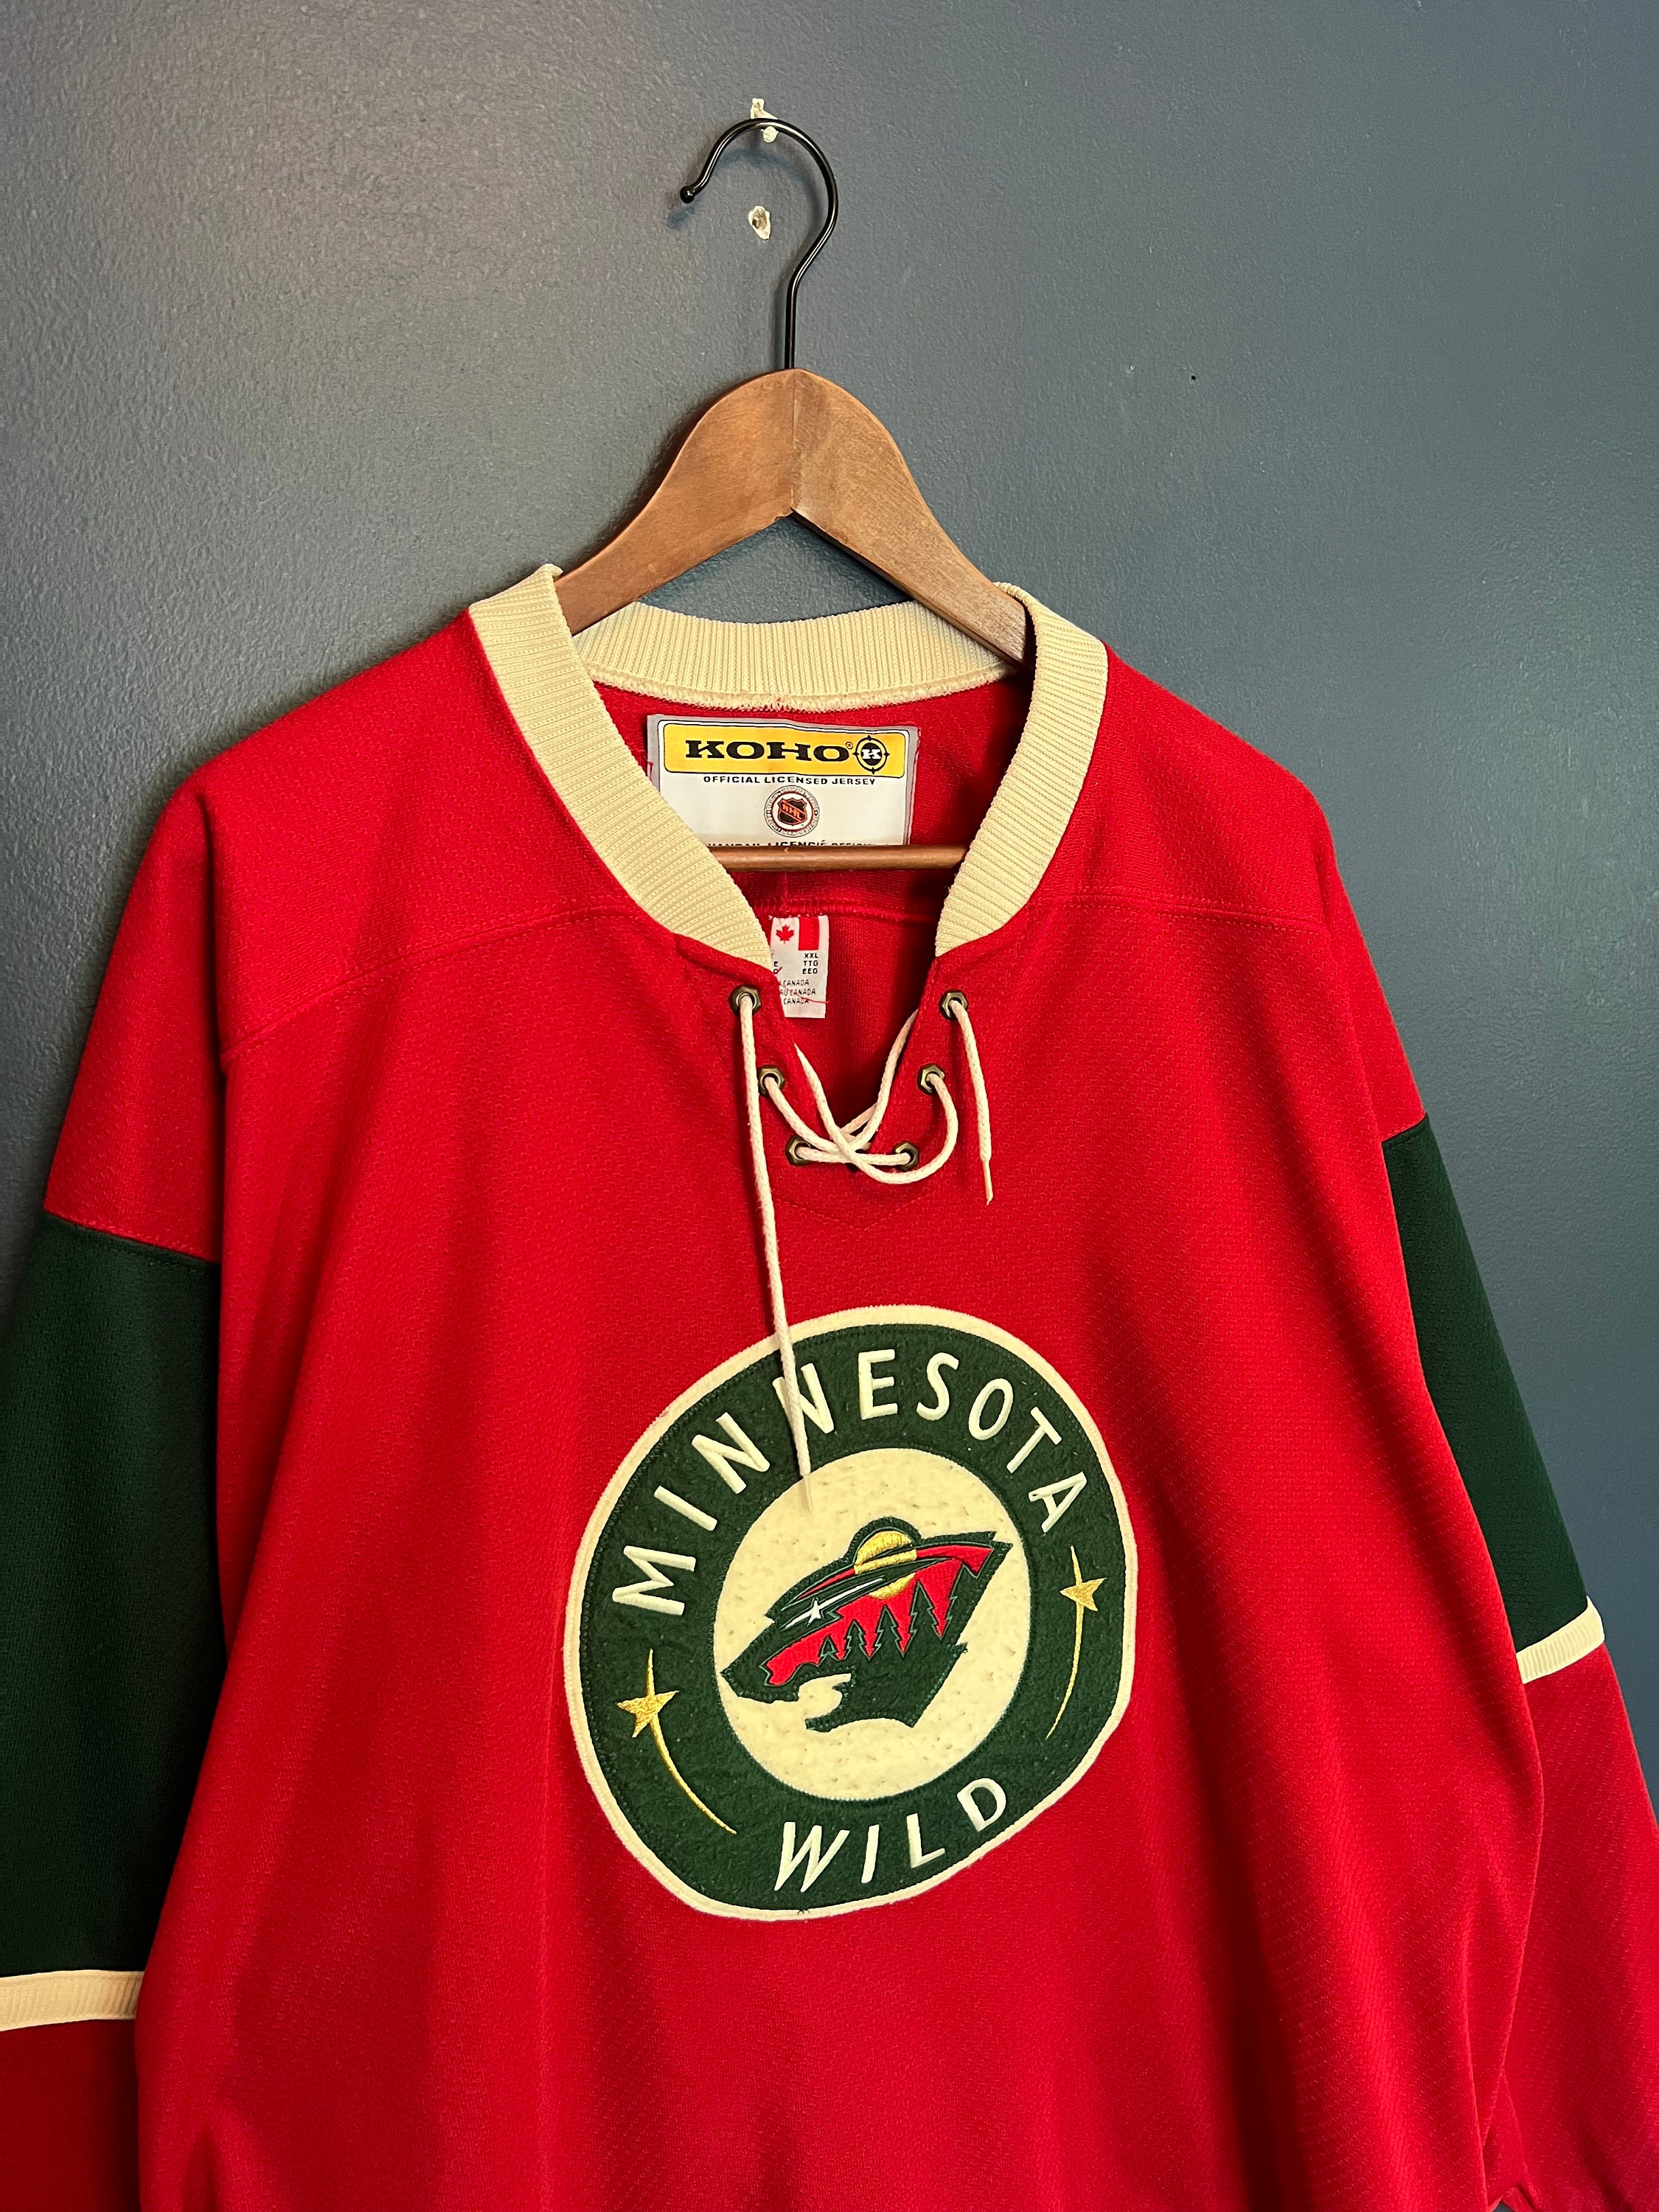 Reebok, Shirts, Minnesota Wild Jersey